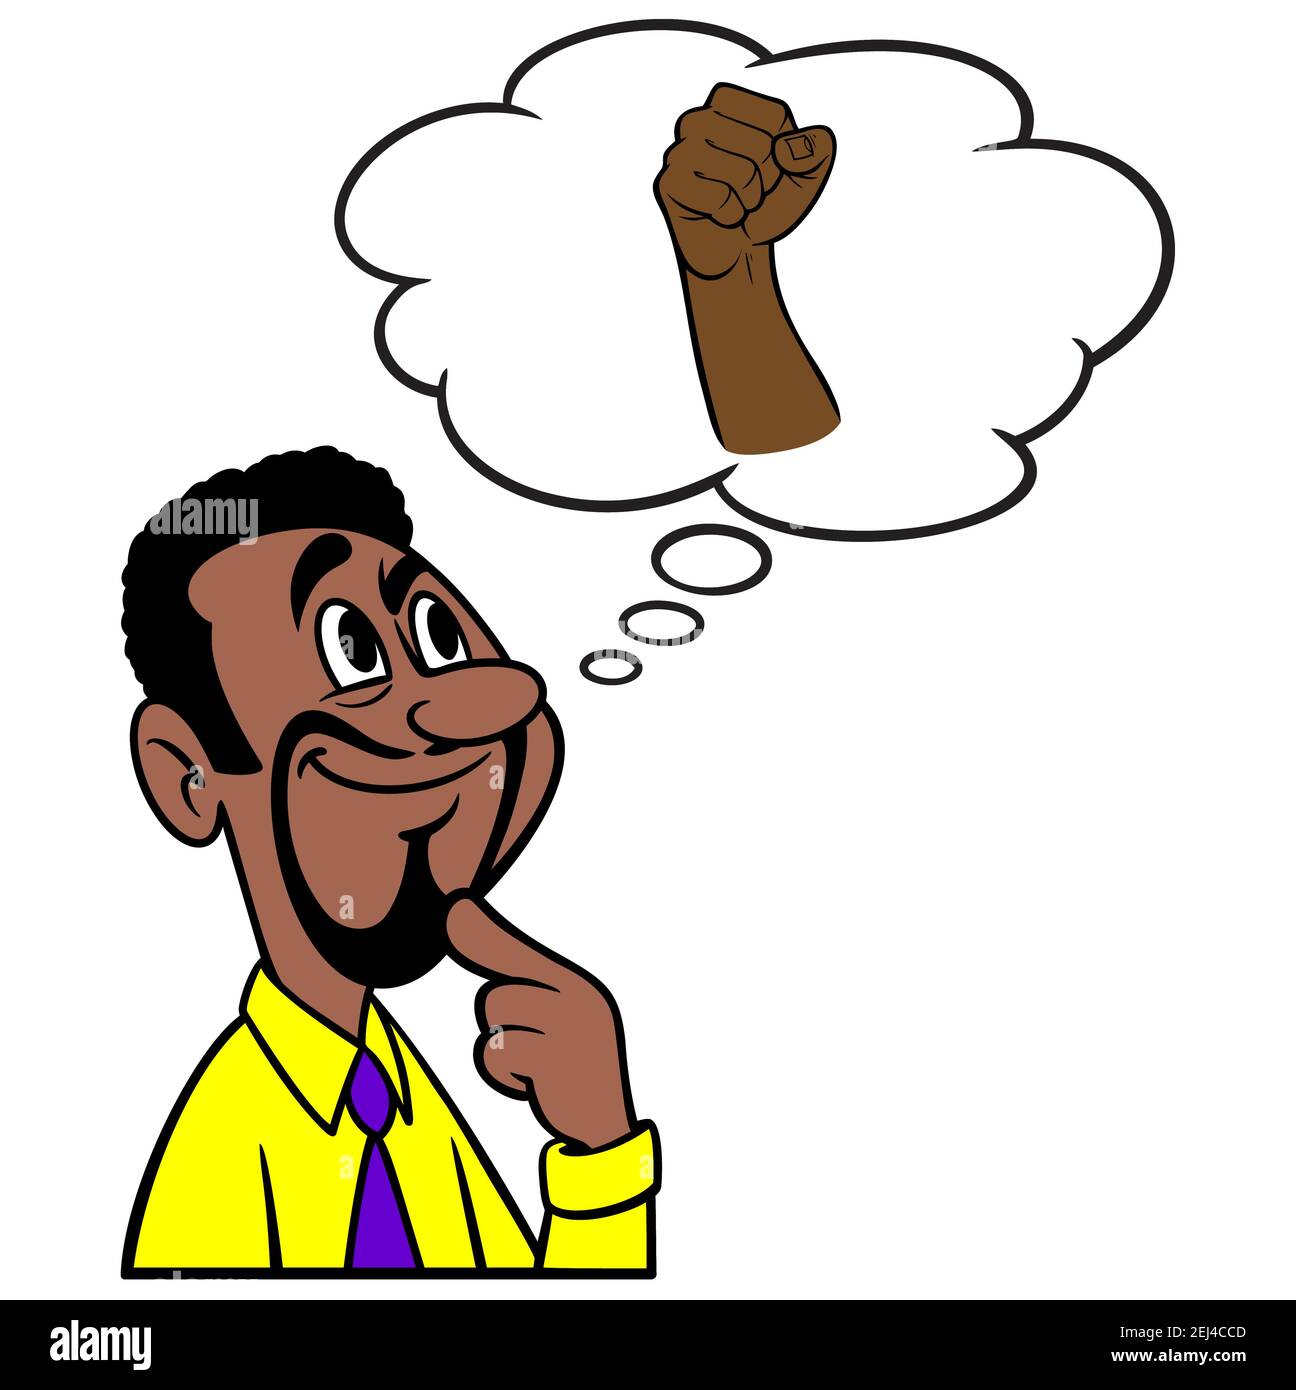 Uomo che pensa a protestare - un'illustrazione cartoon di un uomo che pensa a protestare contro il razzismo. Illustrazione Vettoriale